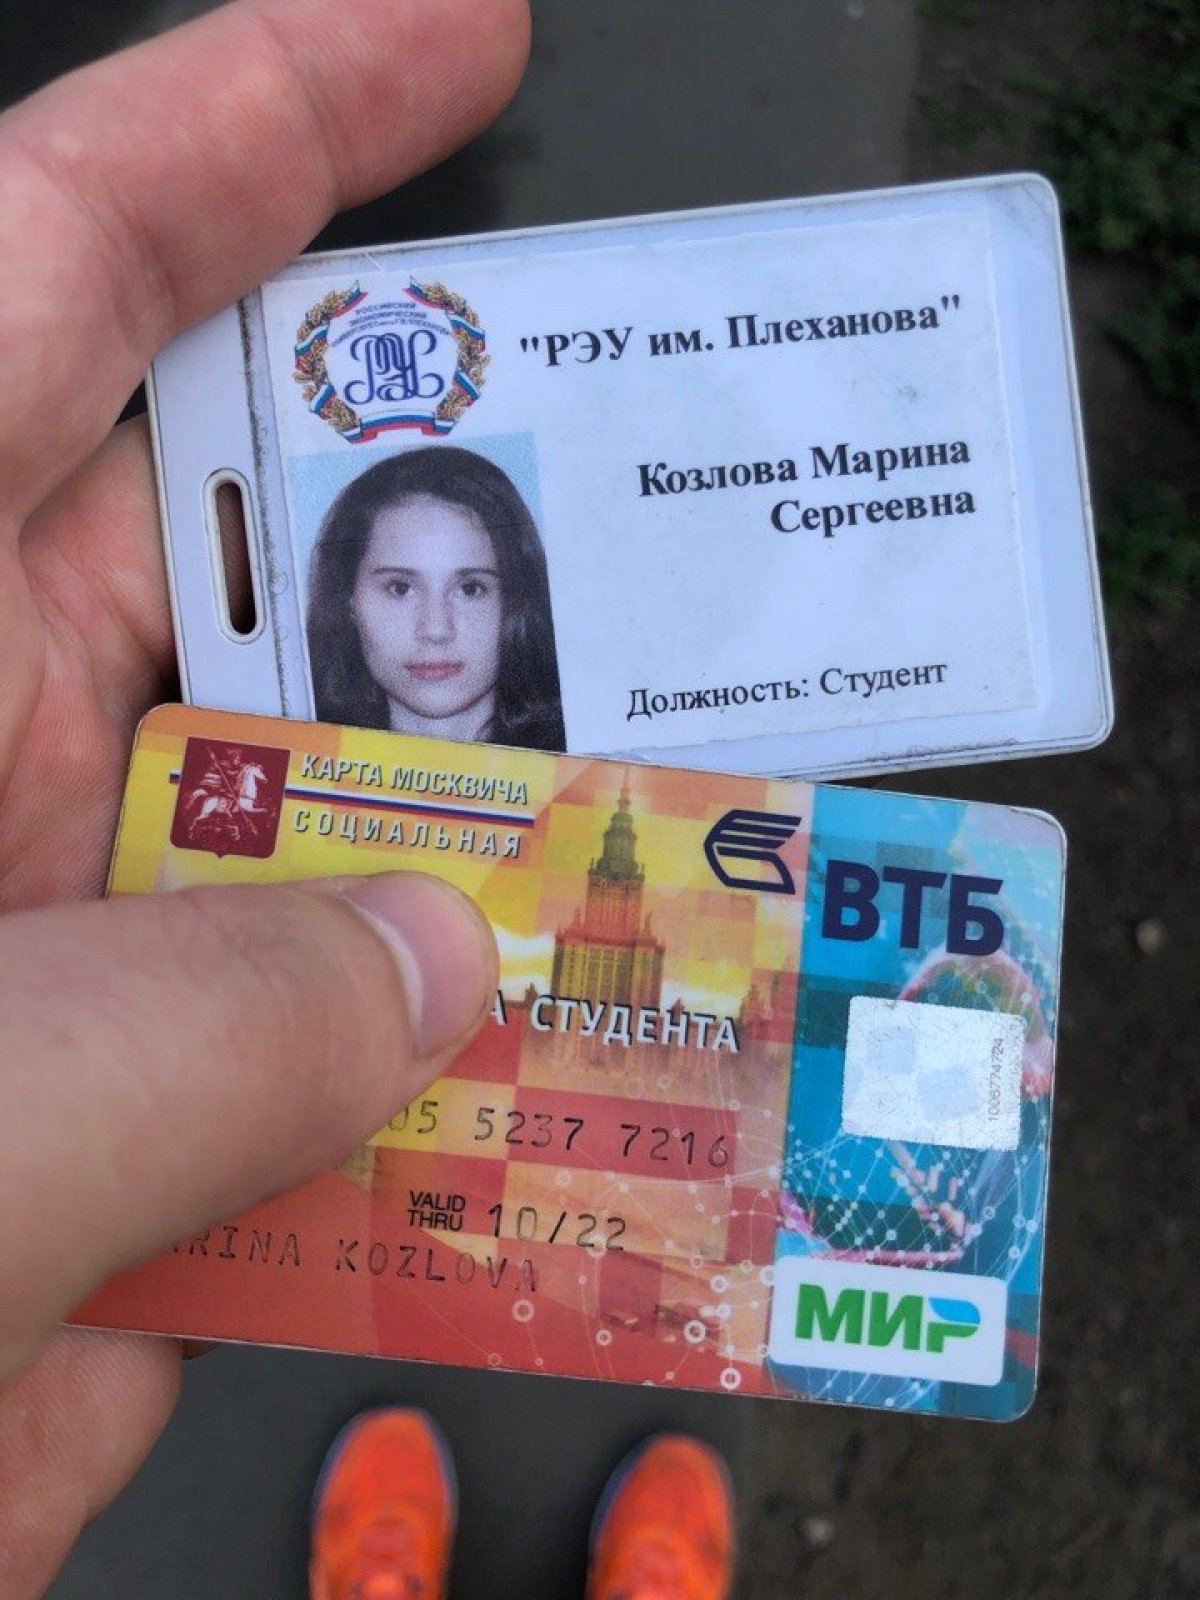 Найден пропуск в университет и социальная карта Козловой Марины Сергеевны.